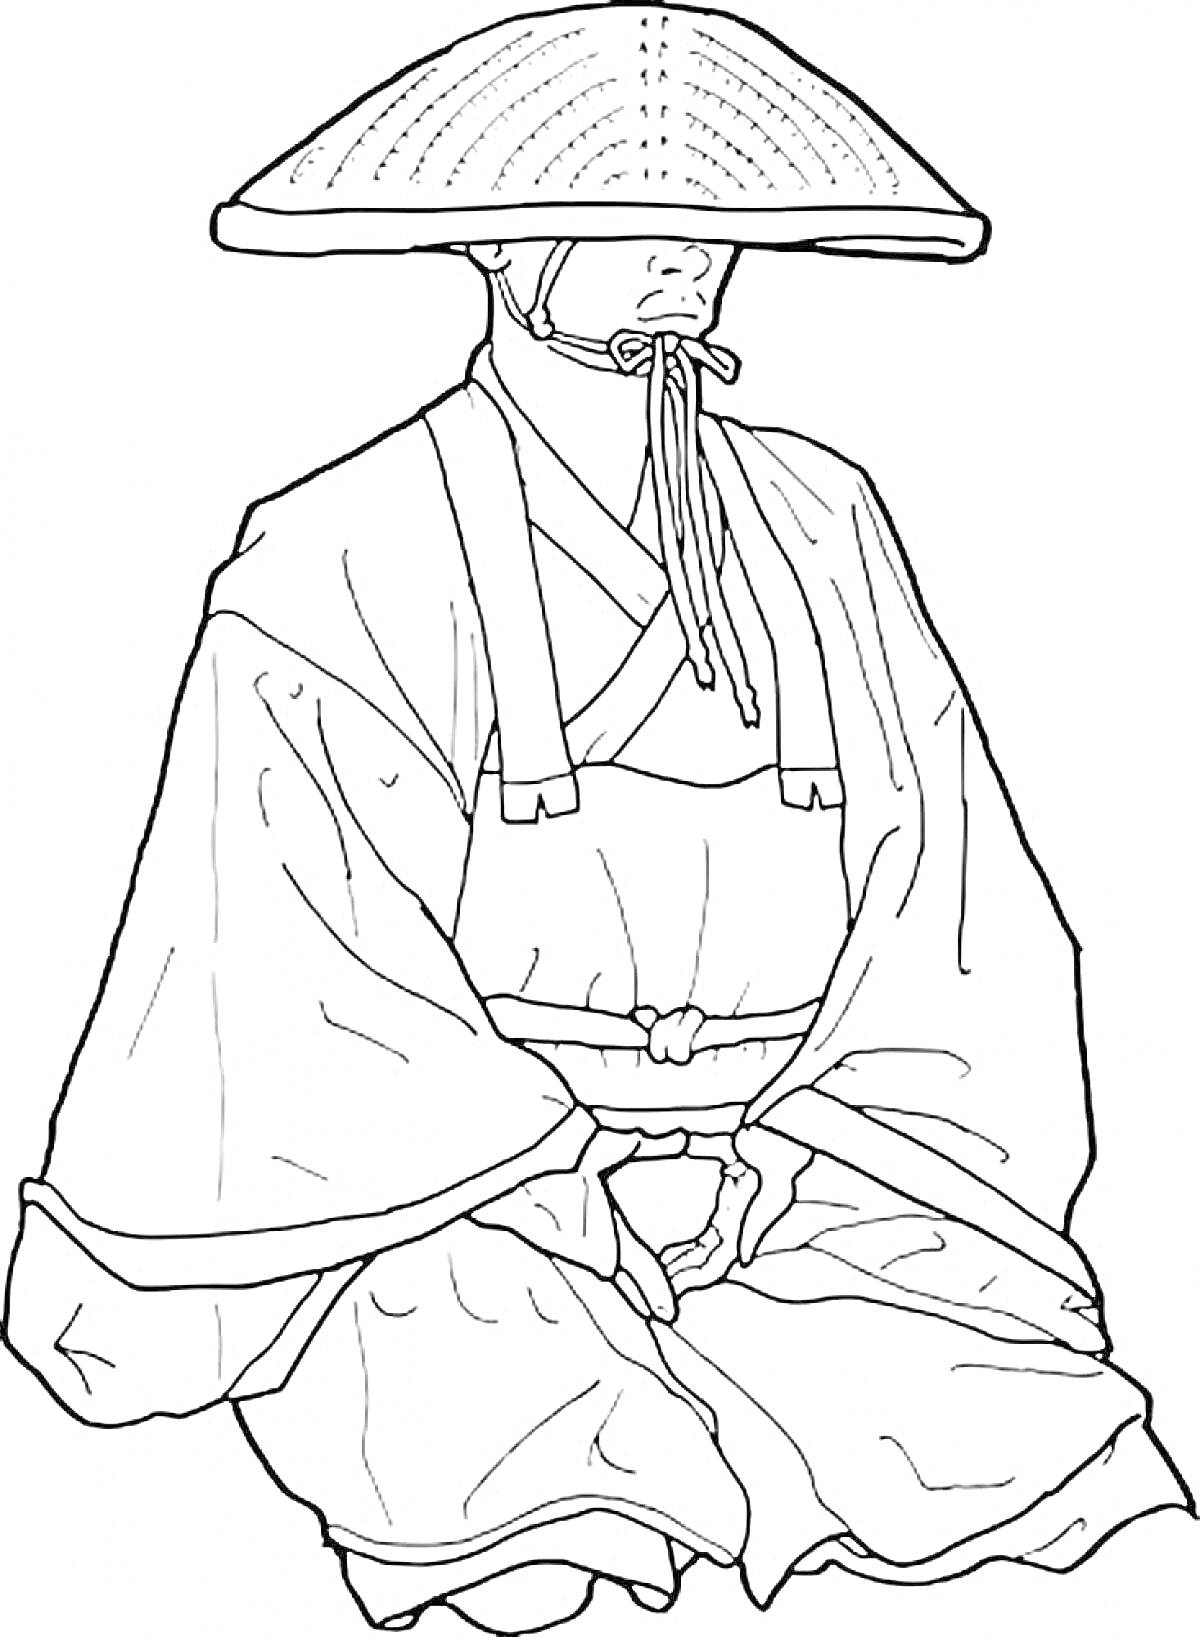 Традиционный японский монах в соломенной шляпе и длинном одеянии